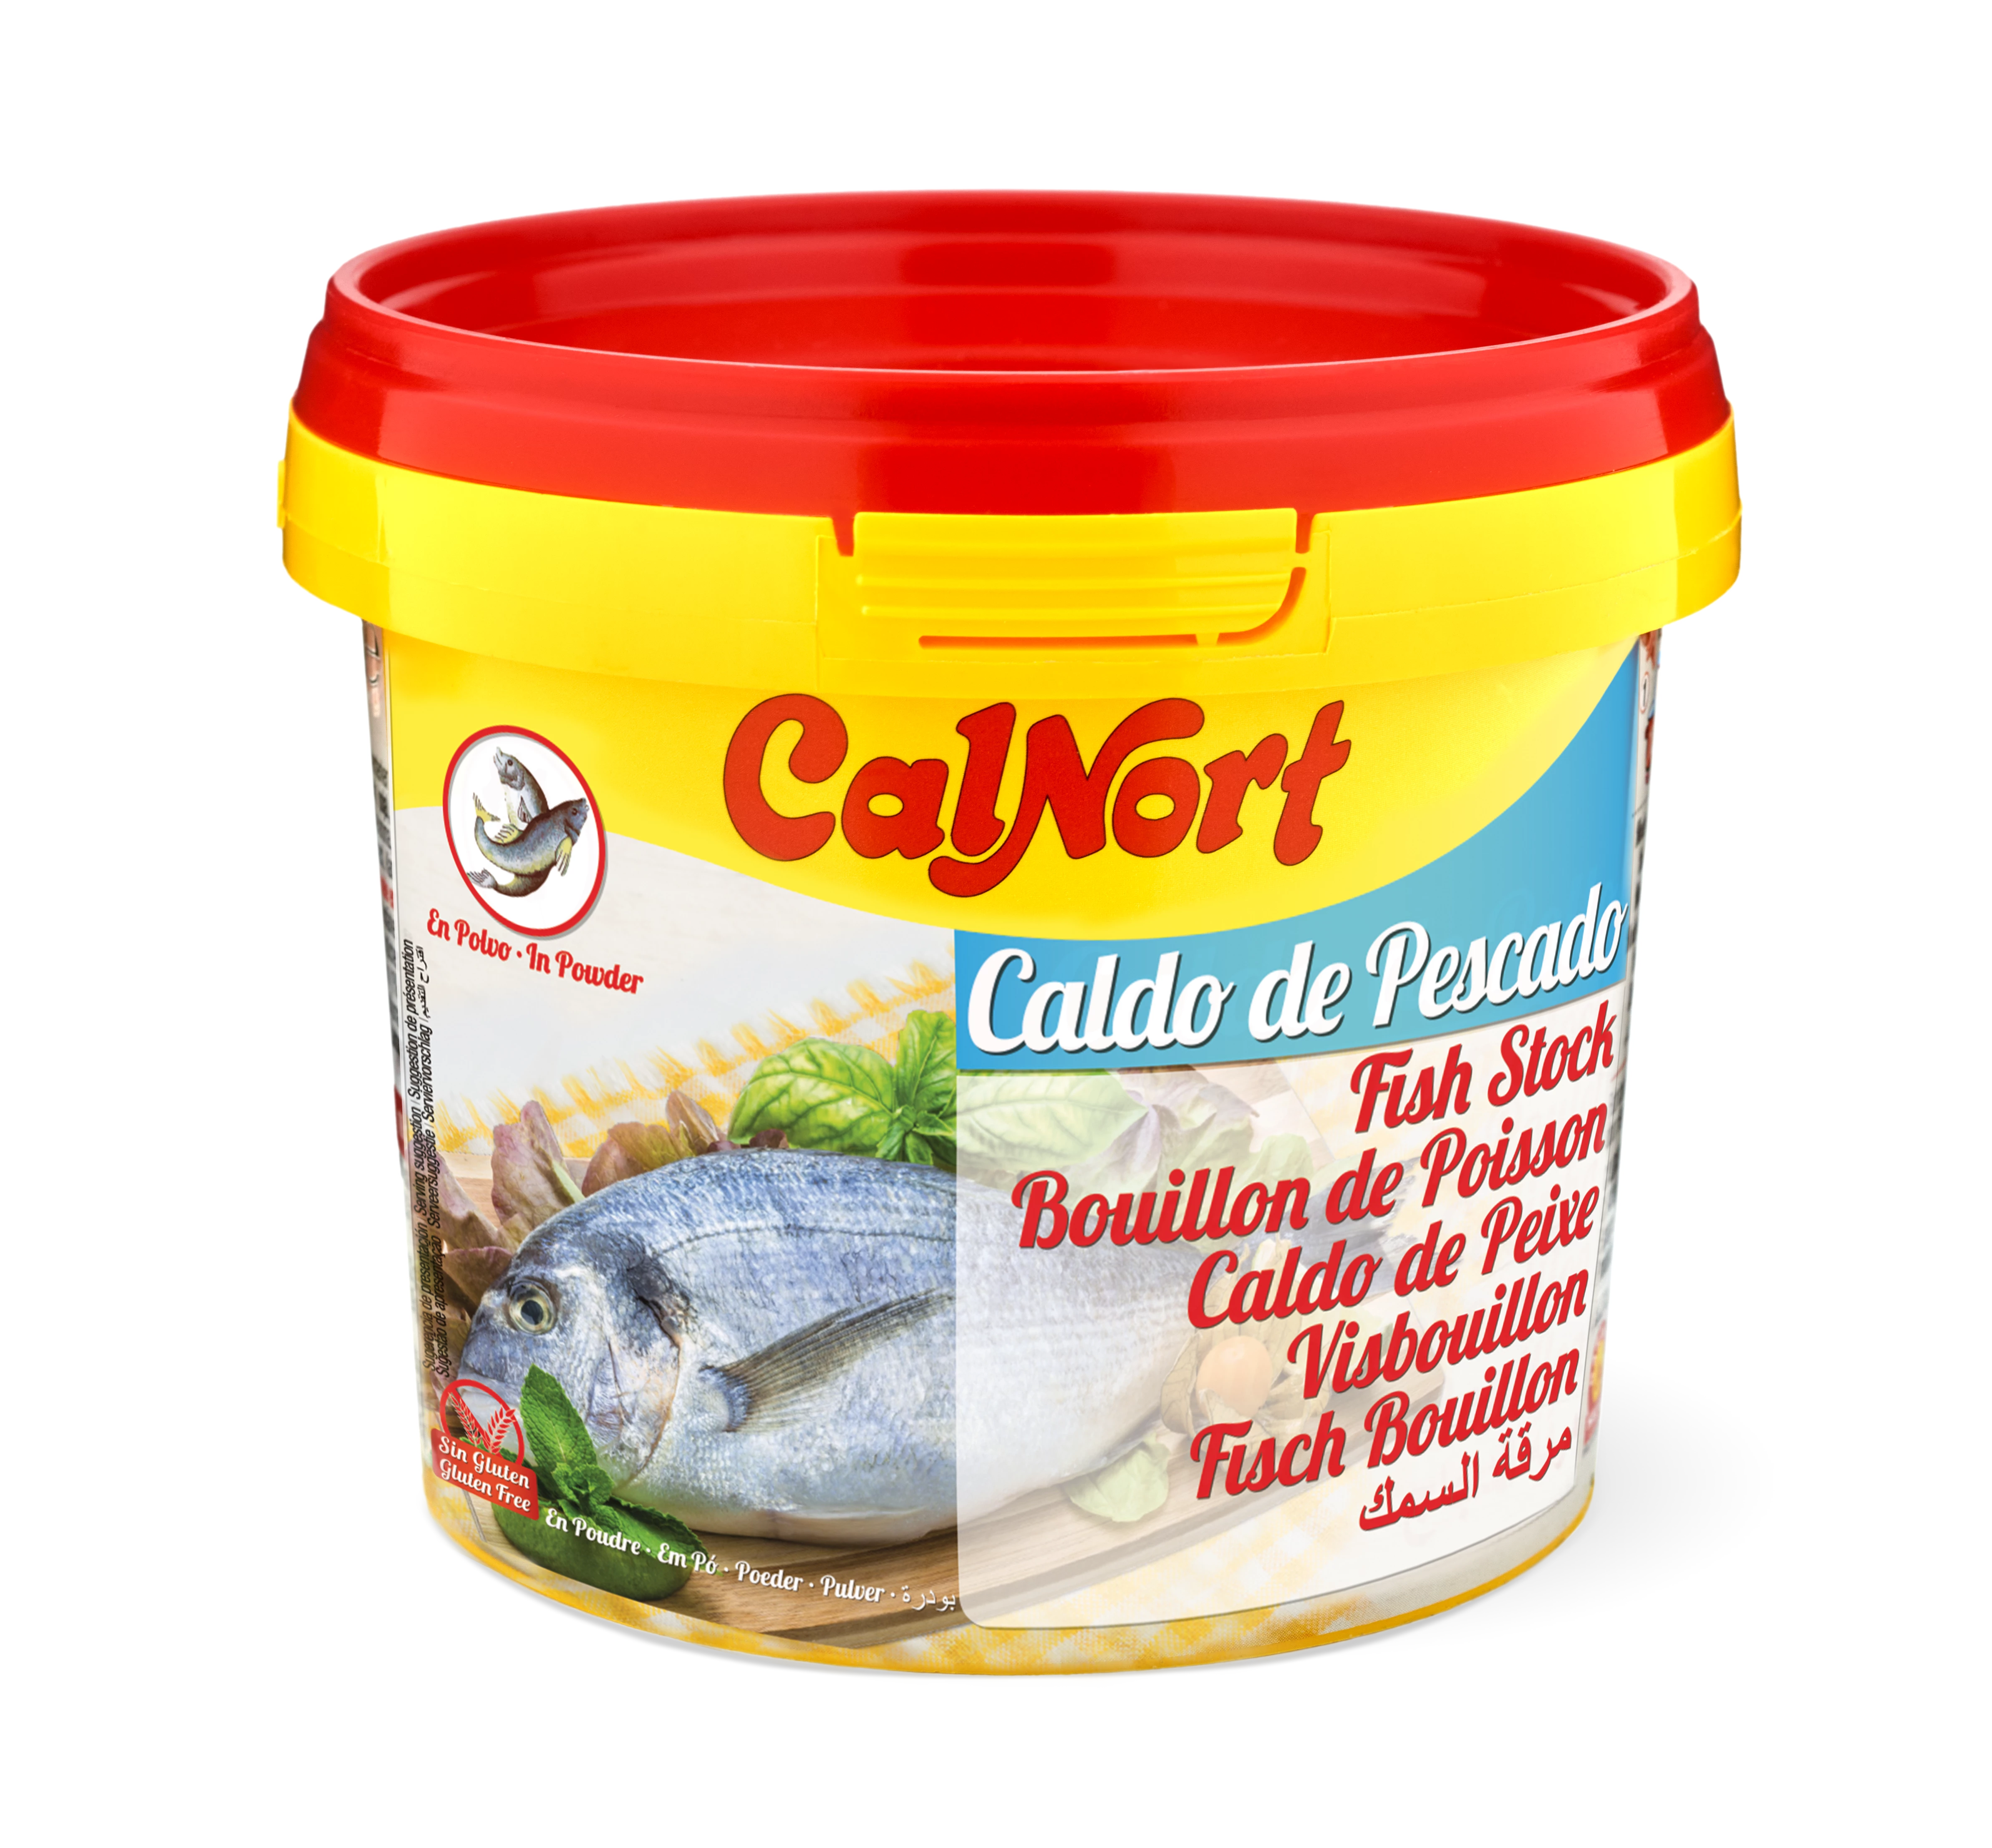 Рыбный бульон со вкусом 250 г - CALNORT